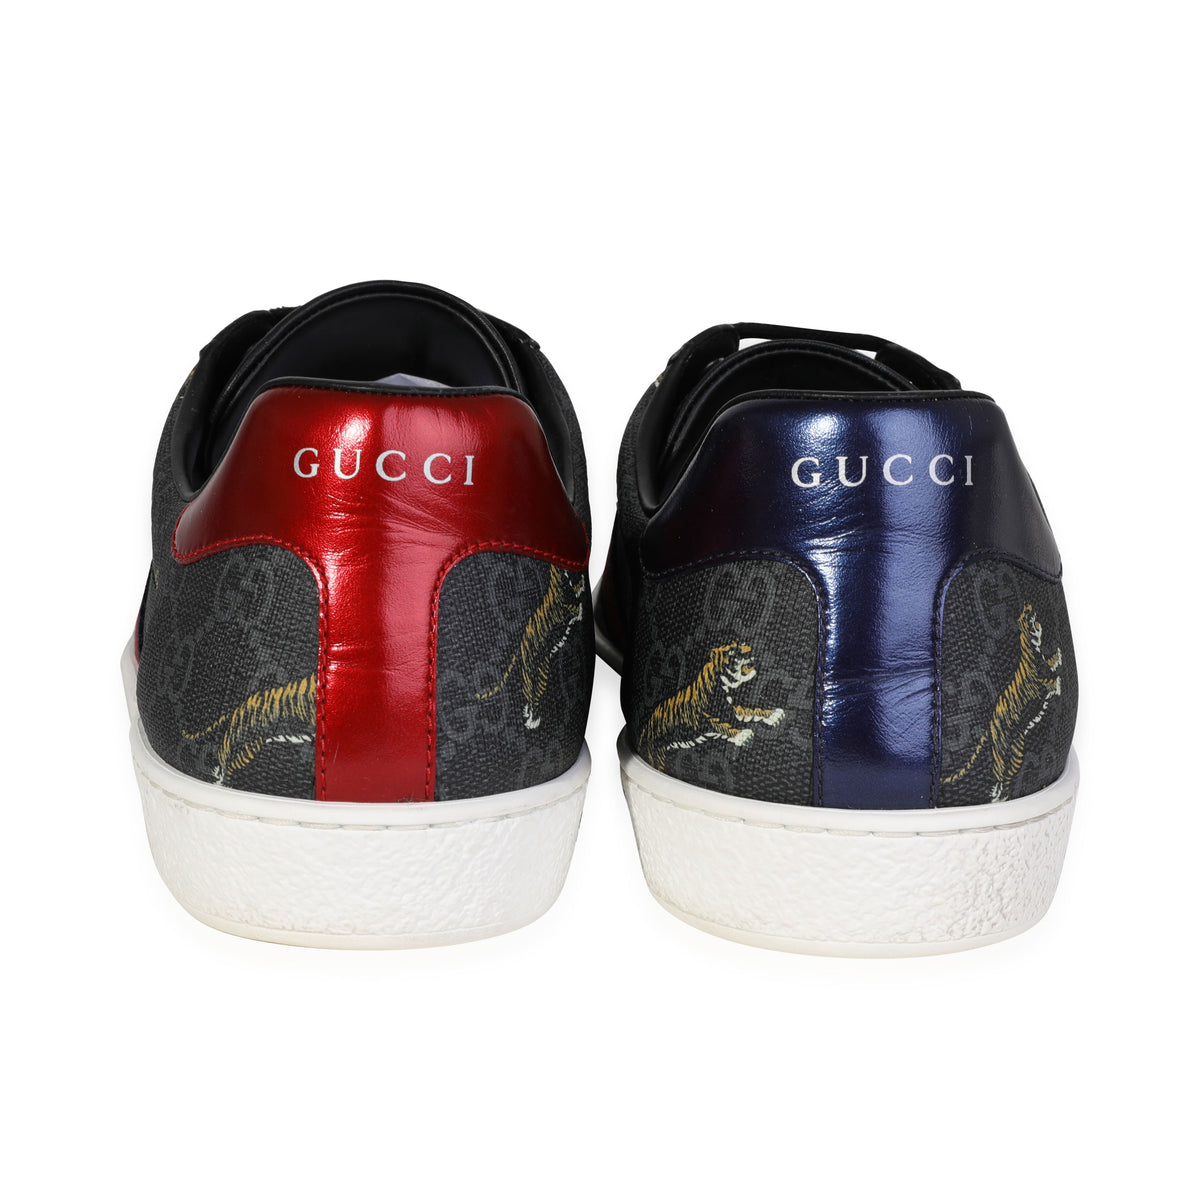 Gucci -  Gucci Ace GG Supreme 'Tigers' (10.5 UK)